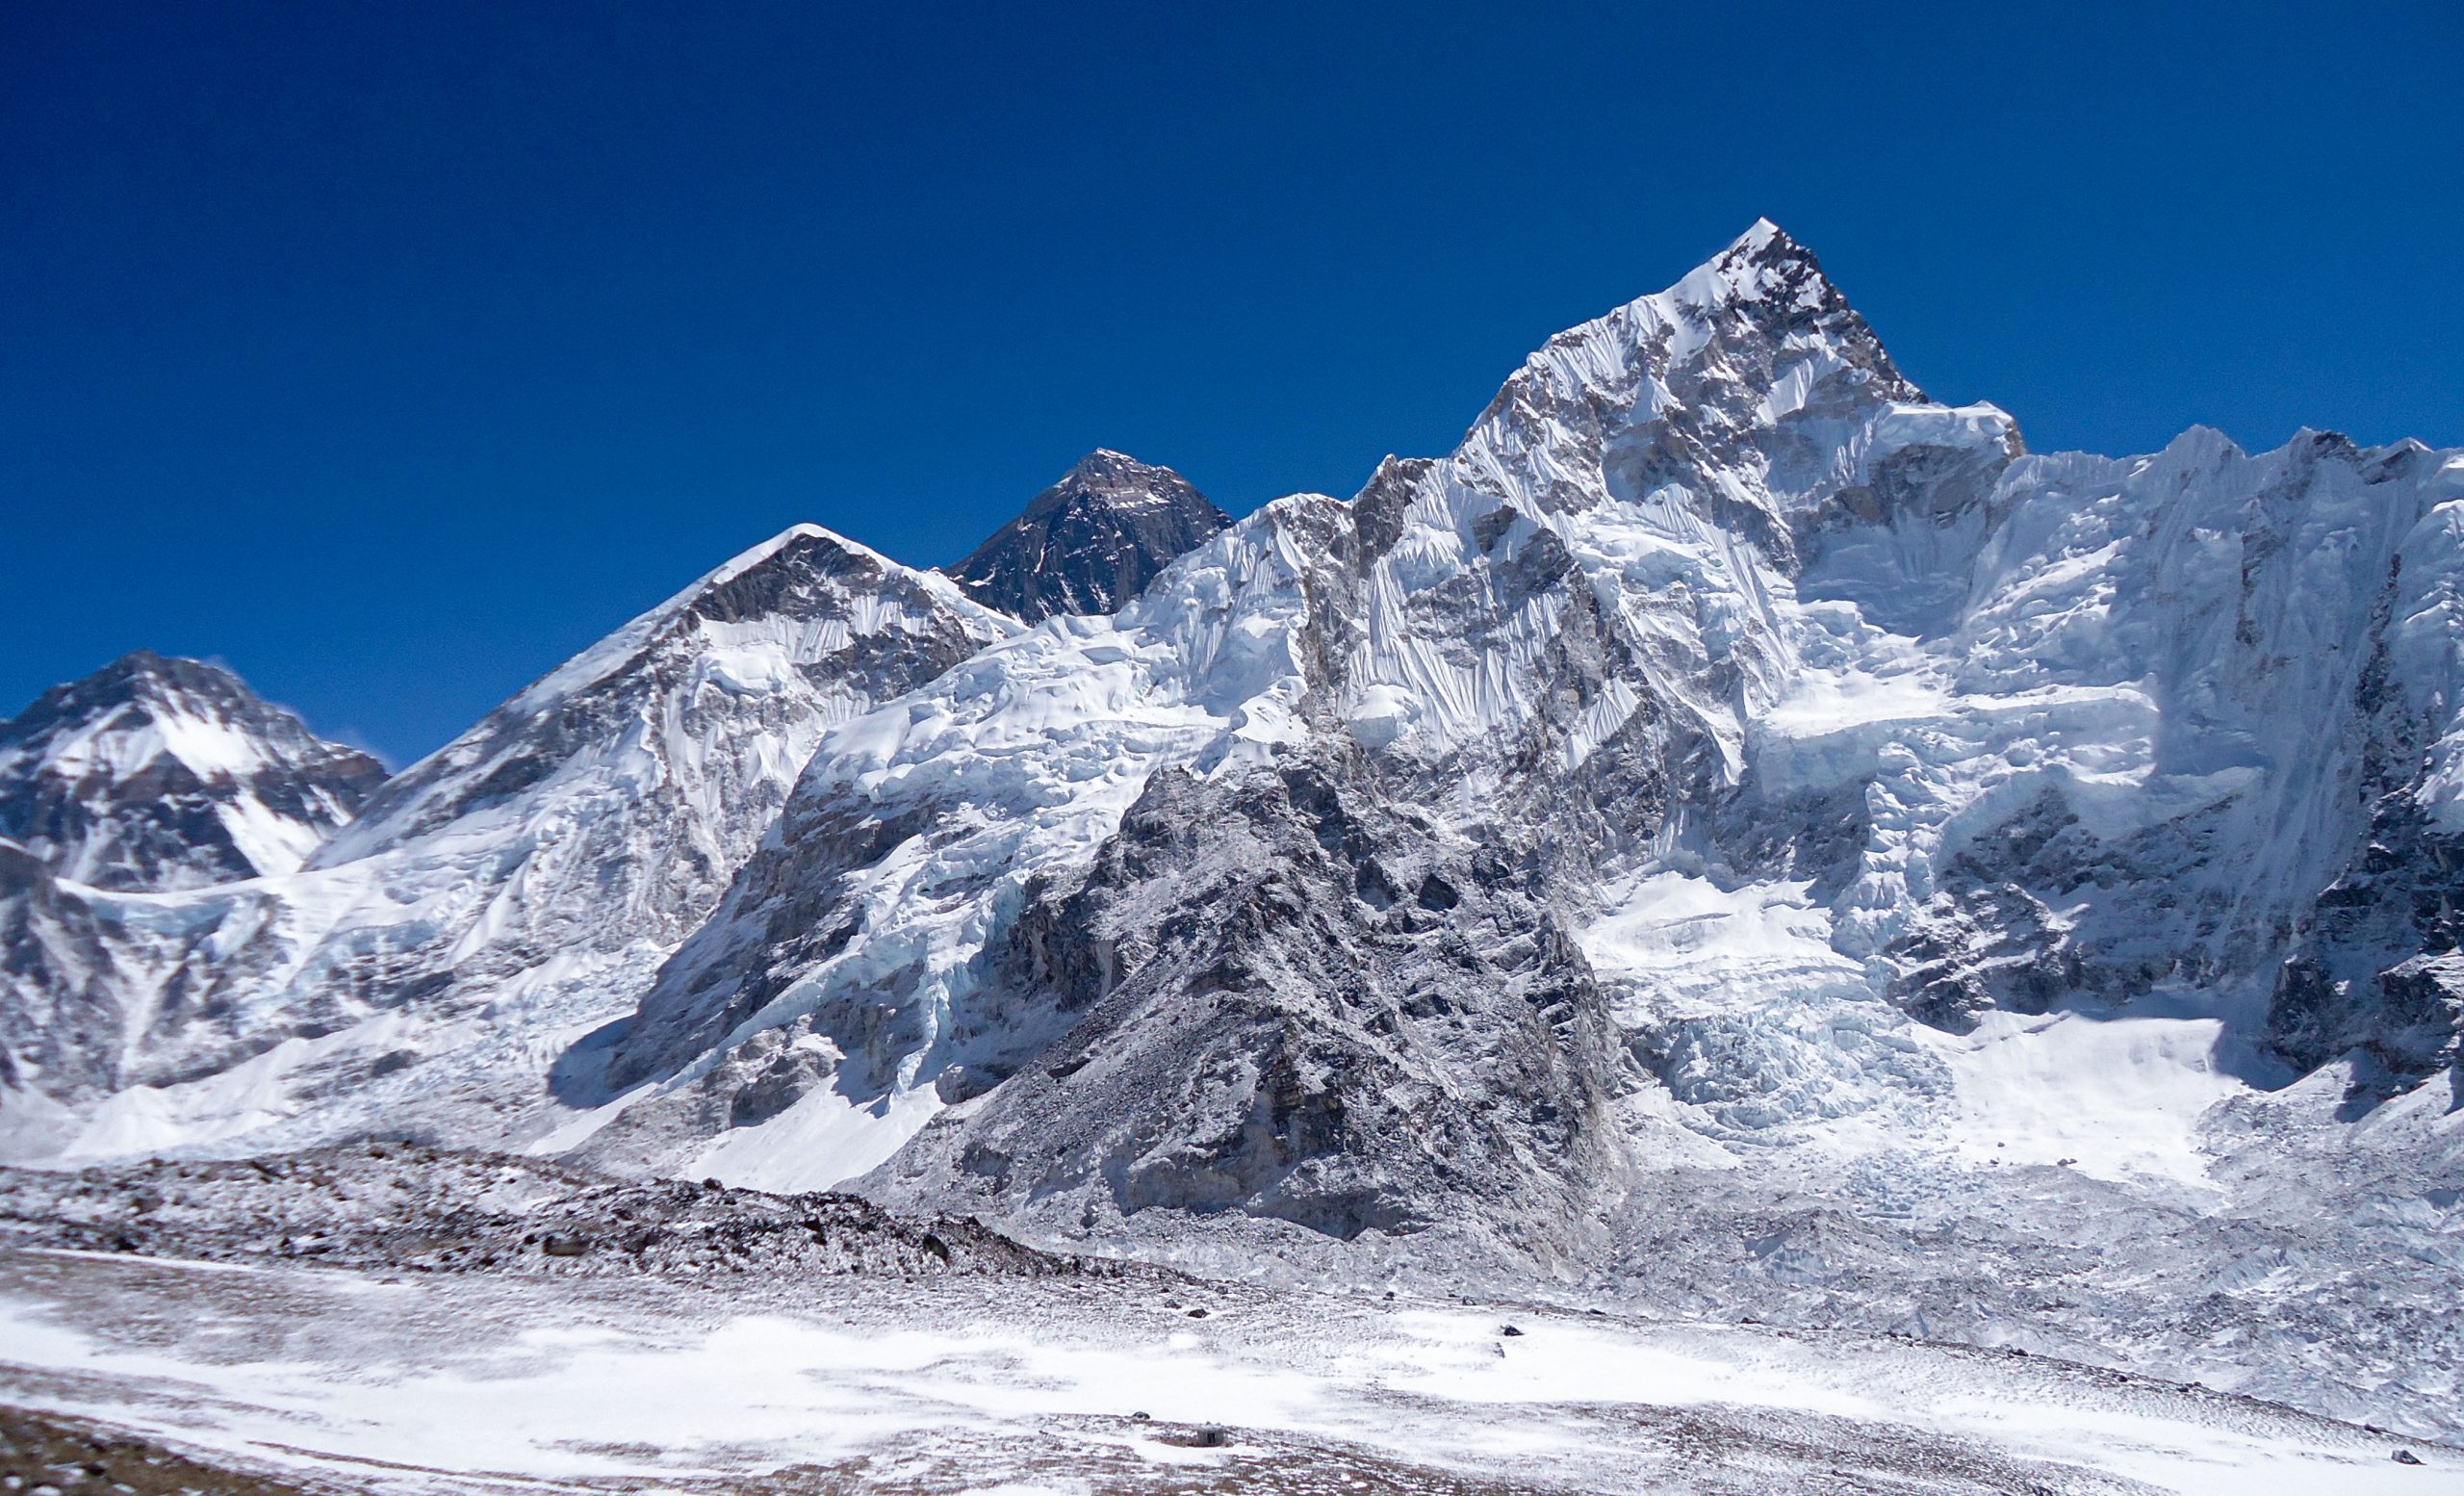 Why We Visit Everest Base Camp?